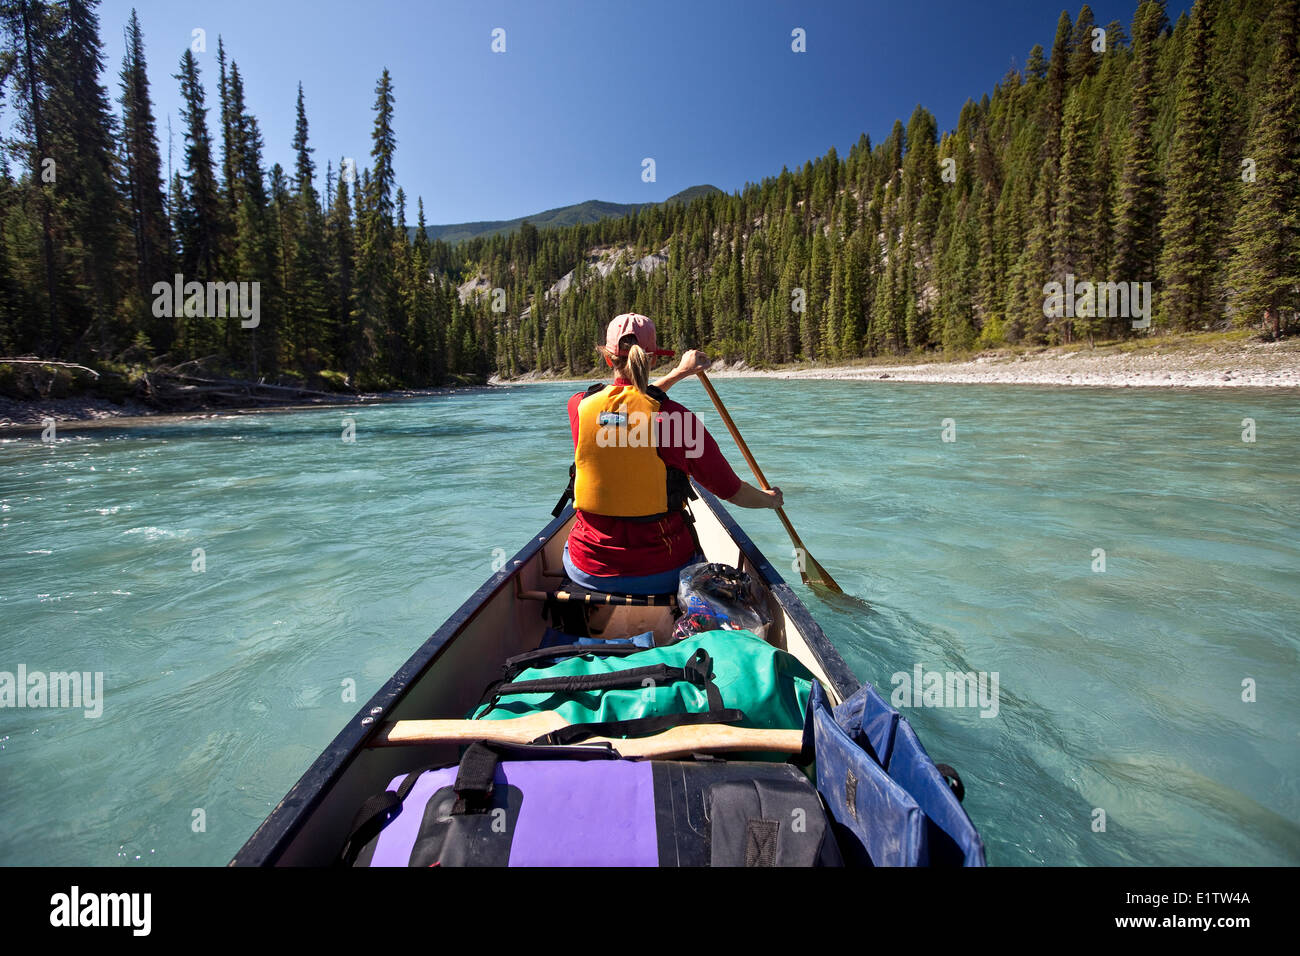 Mujer remando en proa de canoa en el río Kootenay, Parque Nacional de Kootenay, BC, Canadá. Foto de stock